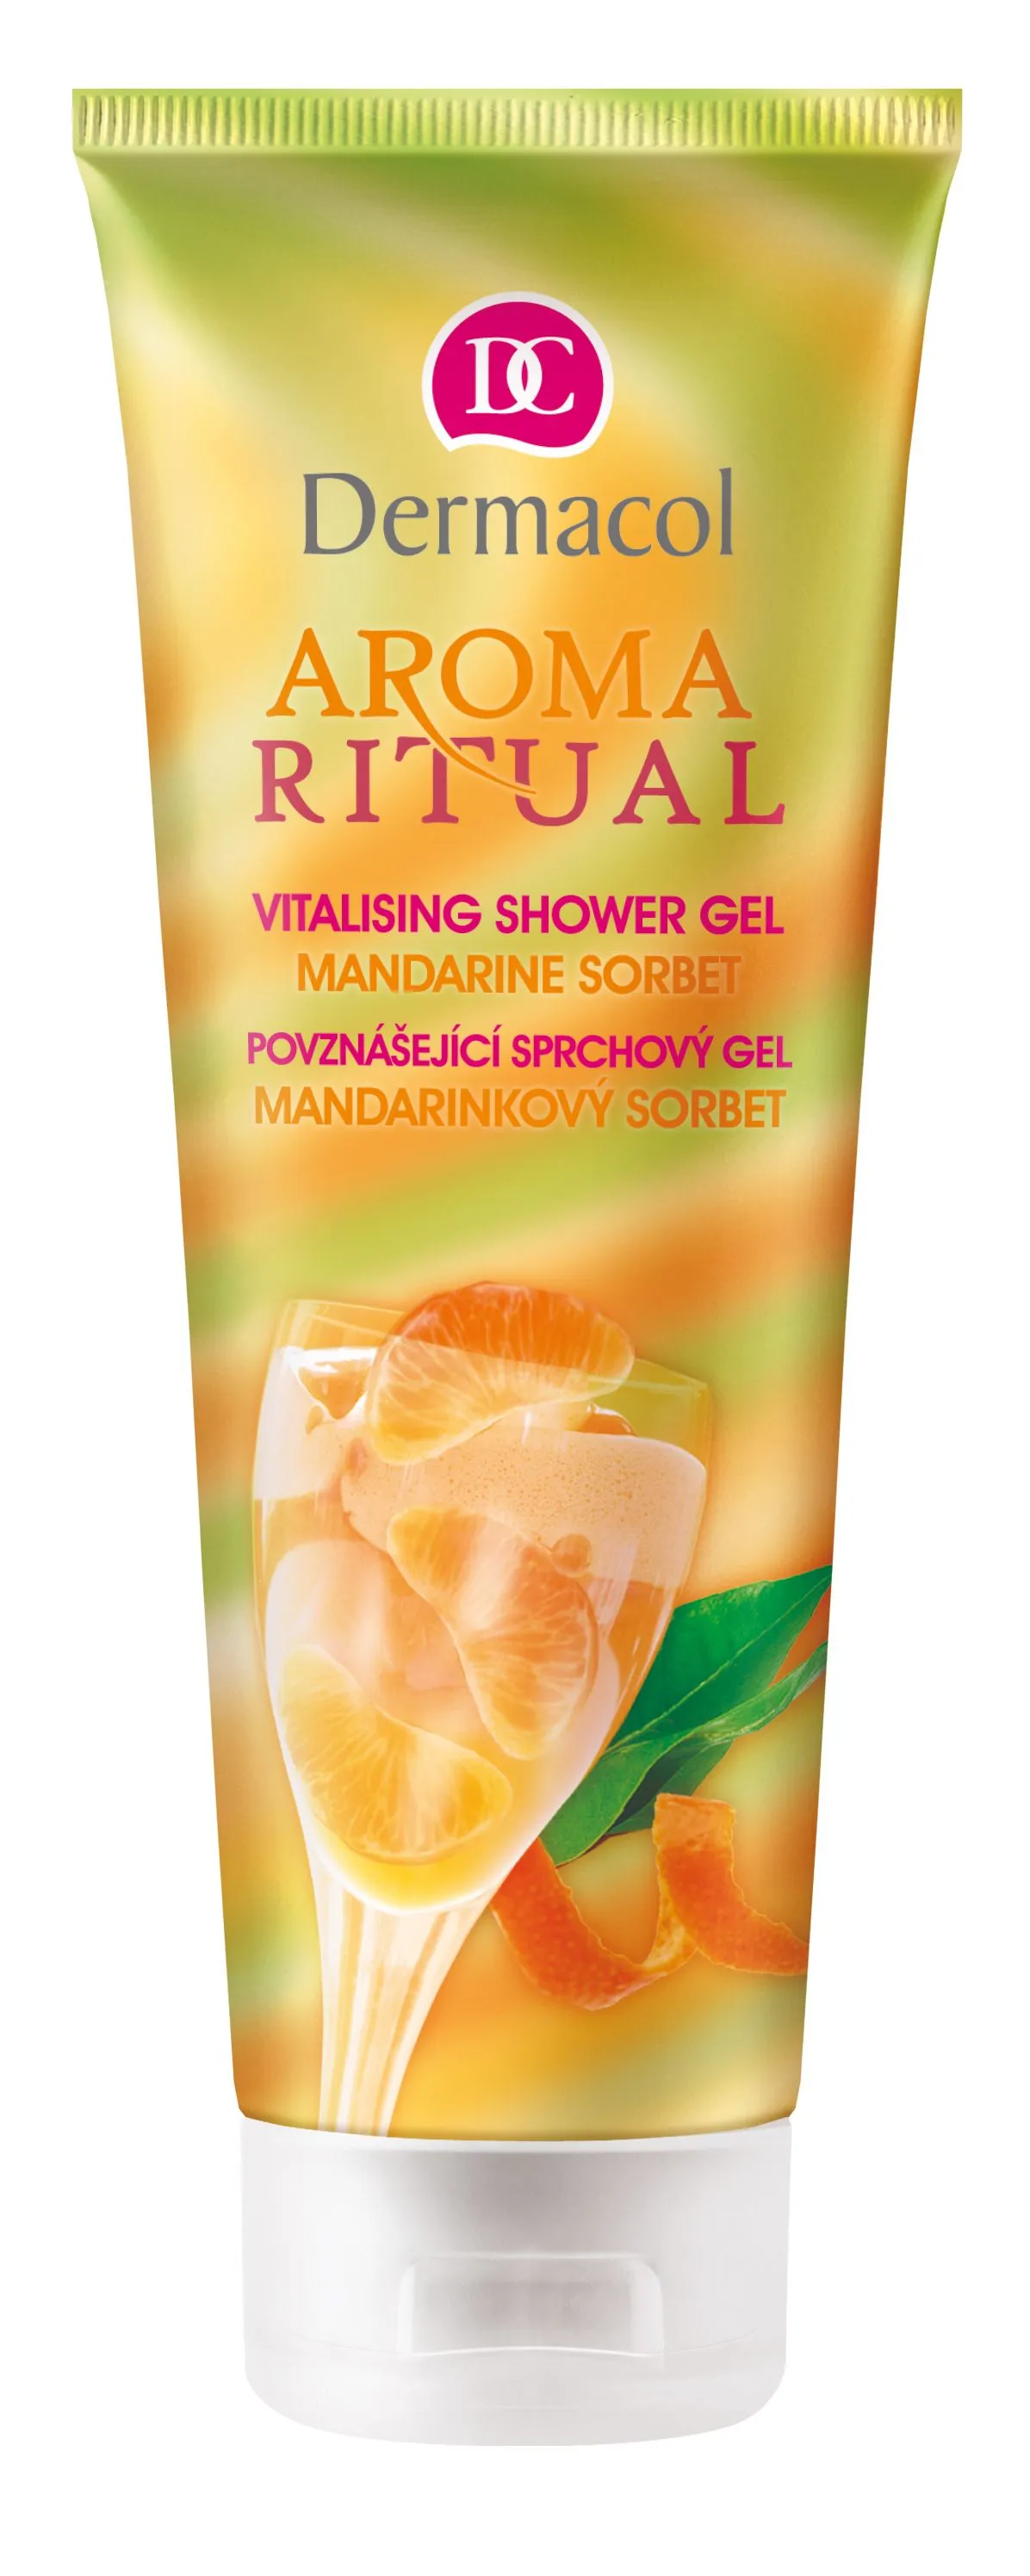 Dermacol Aroma Ritual povznášející sprchový gel mandarinkový sorbet 250 ml